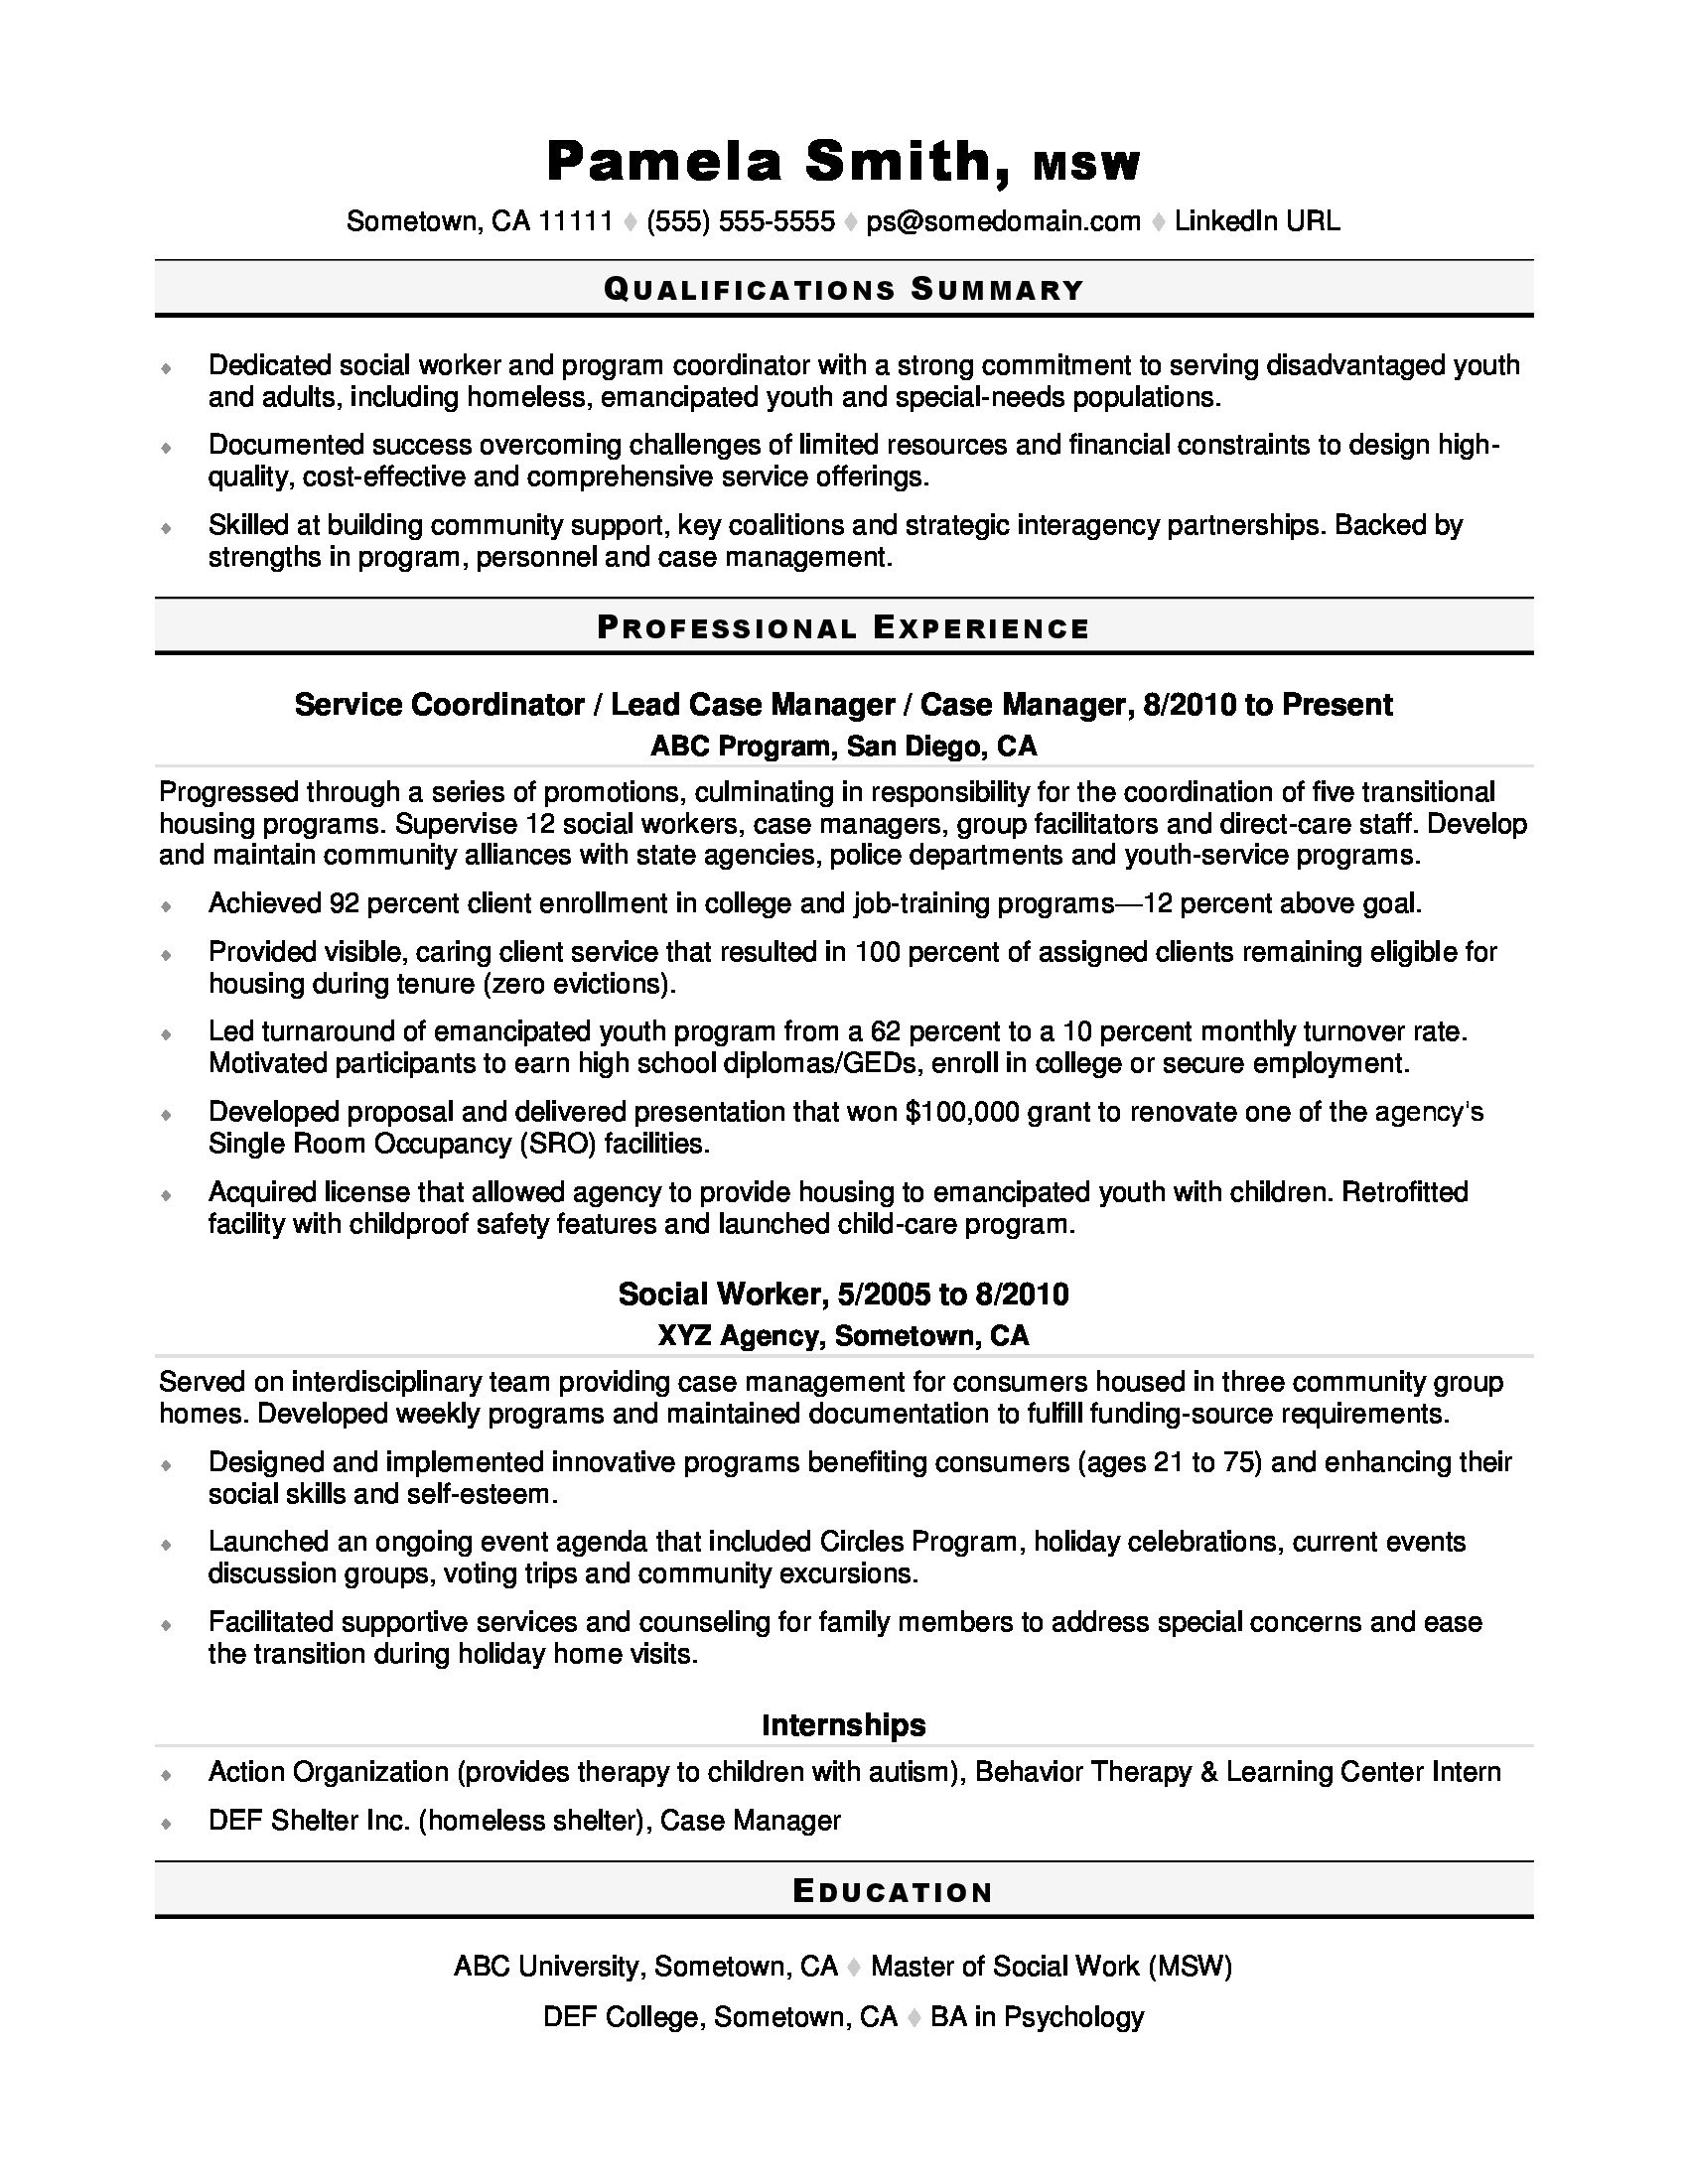 Sample social Work Resume Cover Letter social Work Resume Monster.com